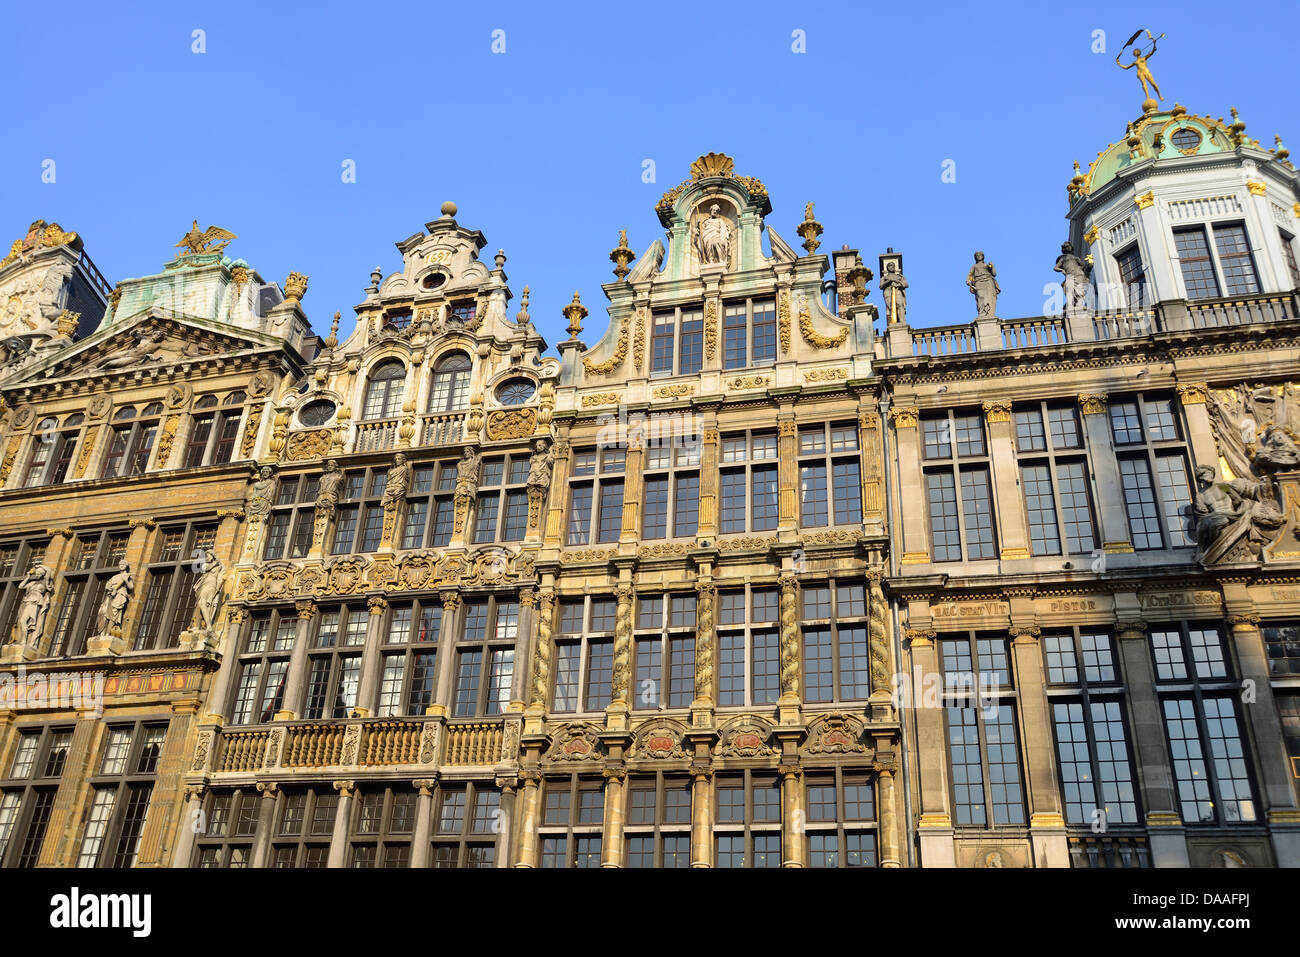 Belge, Belgique, Bruxelles, bruxelles, Europe, grand place, Grote markt, l'Europe de l'ouest Banque D'Images